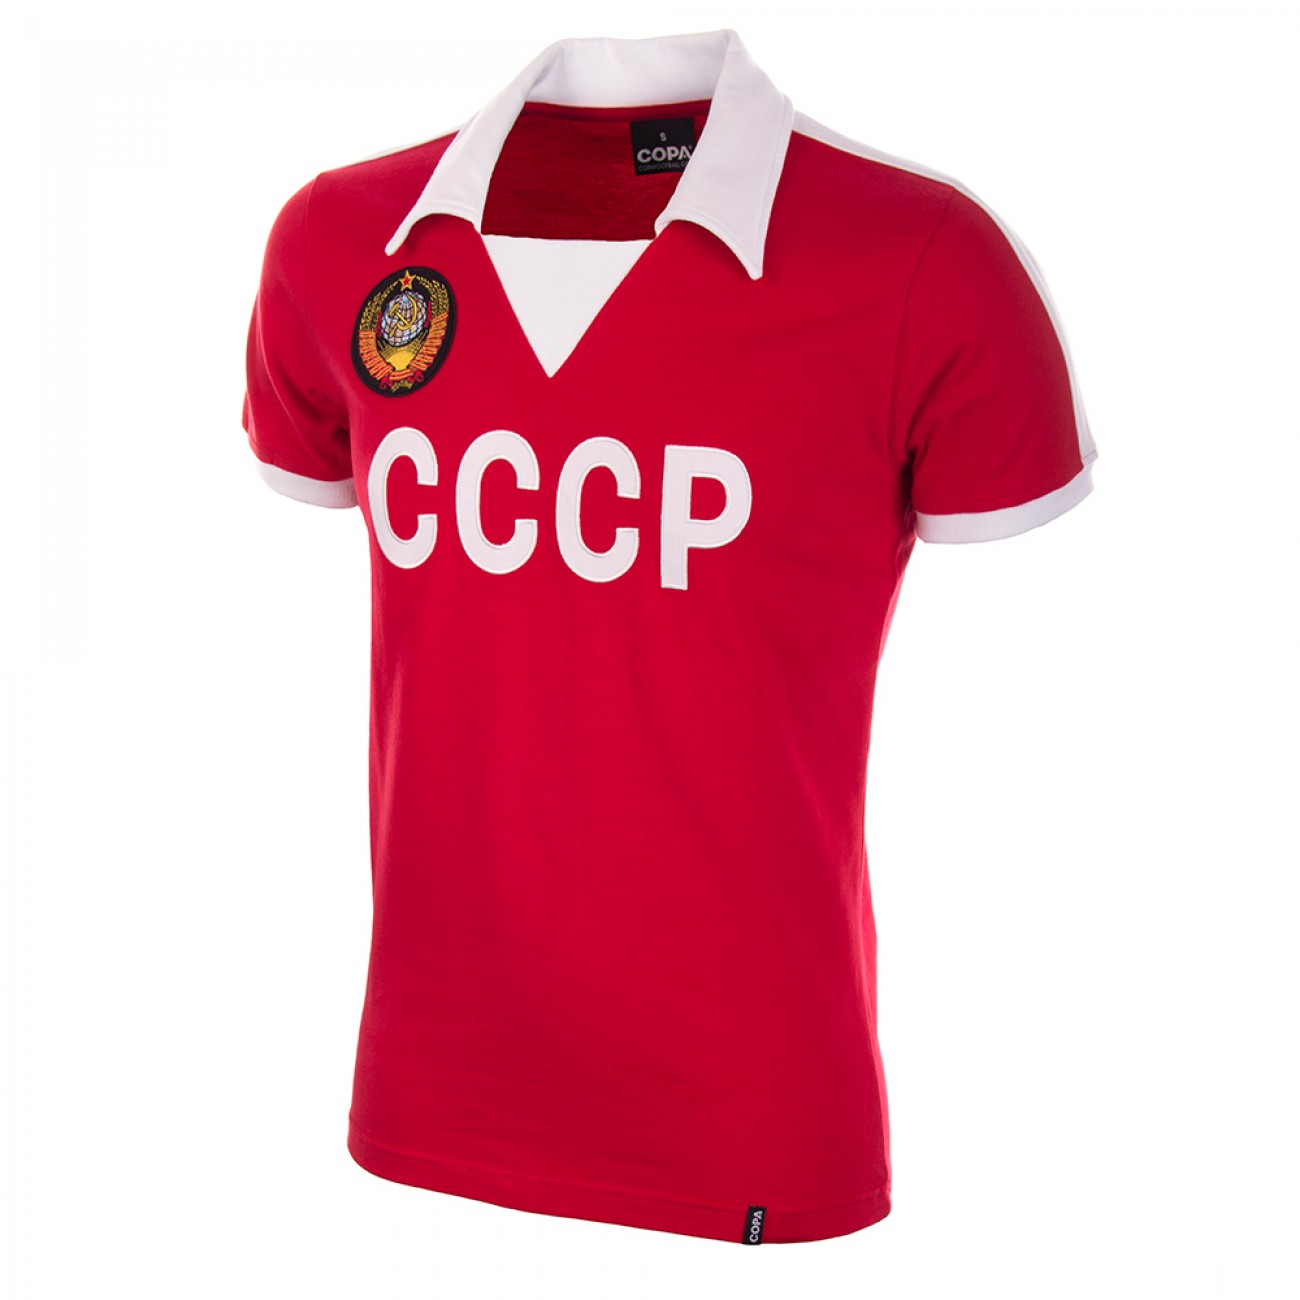 http://www.retrofootball.es/ropa-de-futbol/camiseta-cccp-urss-a-os-80.html